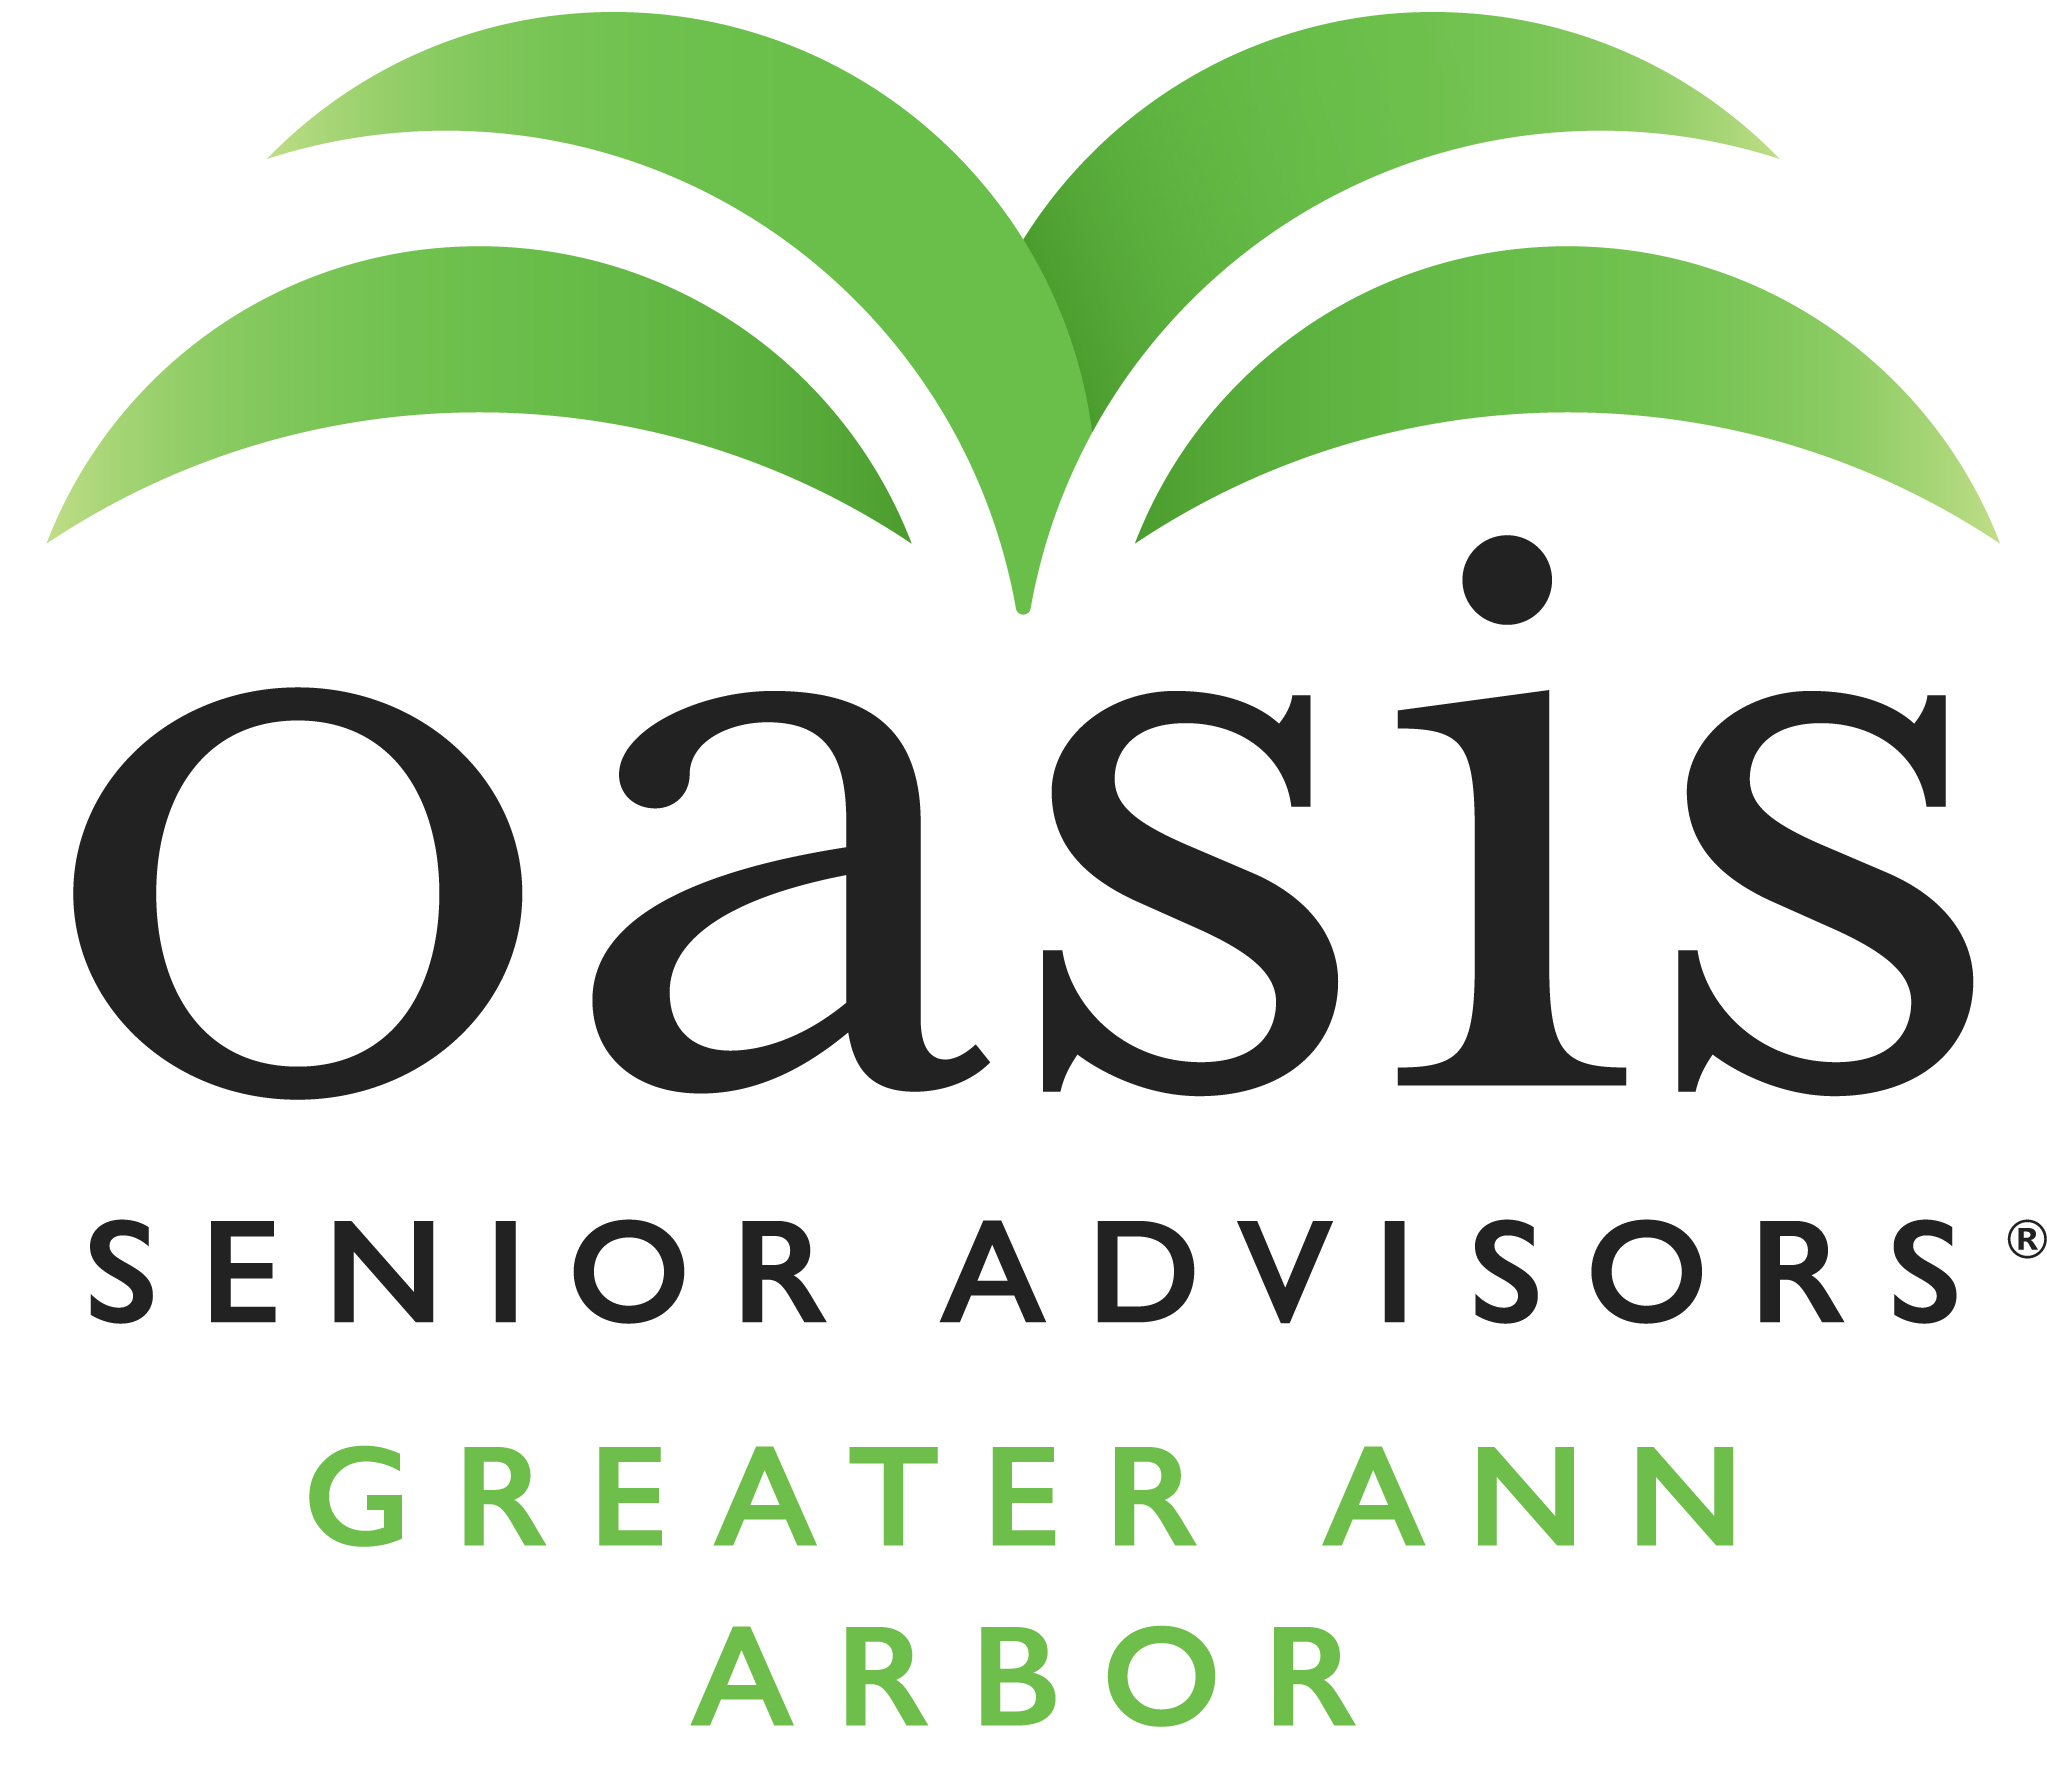 E. Oasis Senior Advisors - Greater Ann Arbor (Nivel 4)